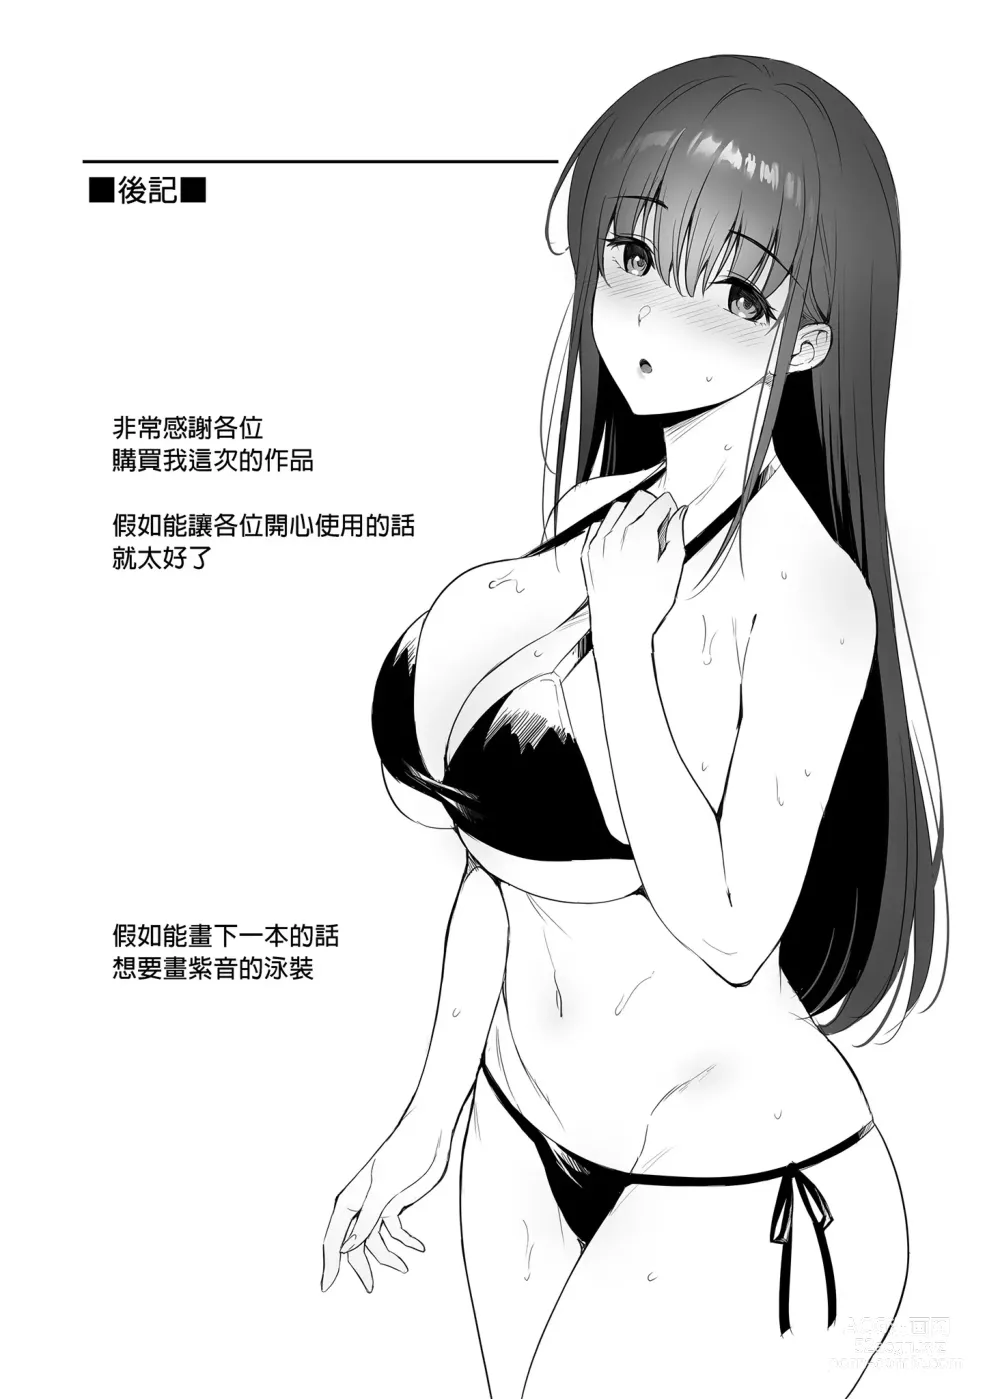 Page 36 of doujinshi 已經有伴侶的我卻成天被強制要求性關係。 (decensored)